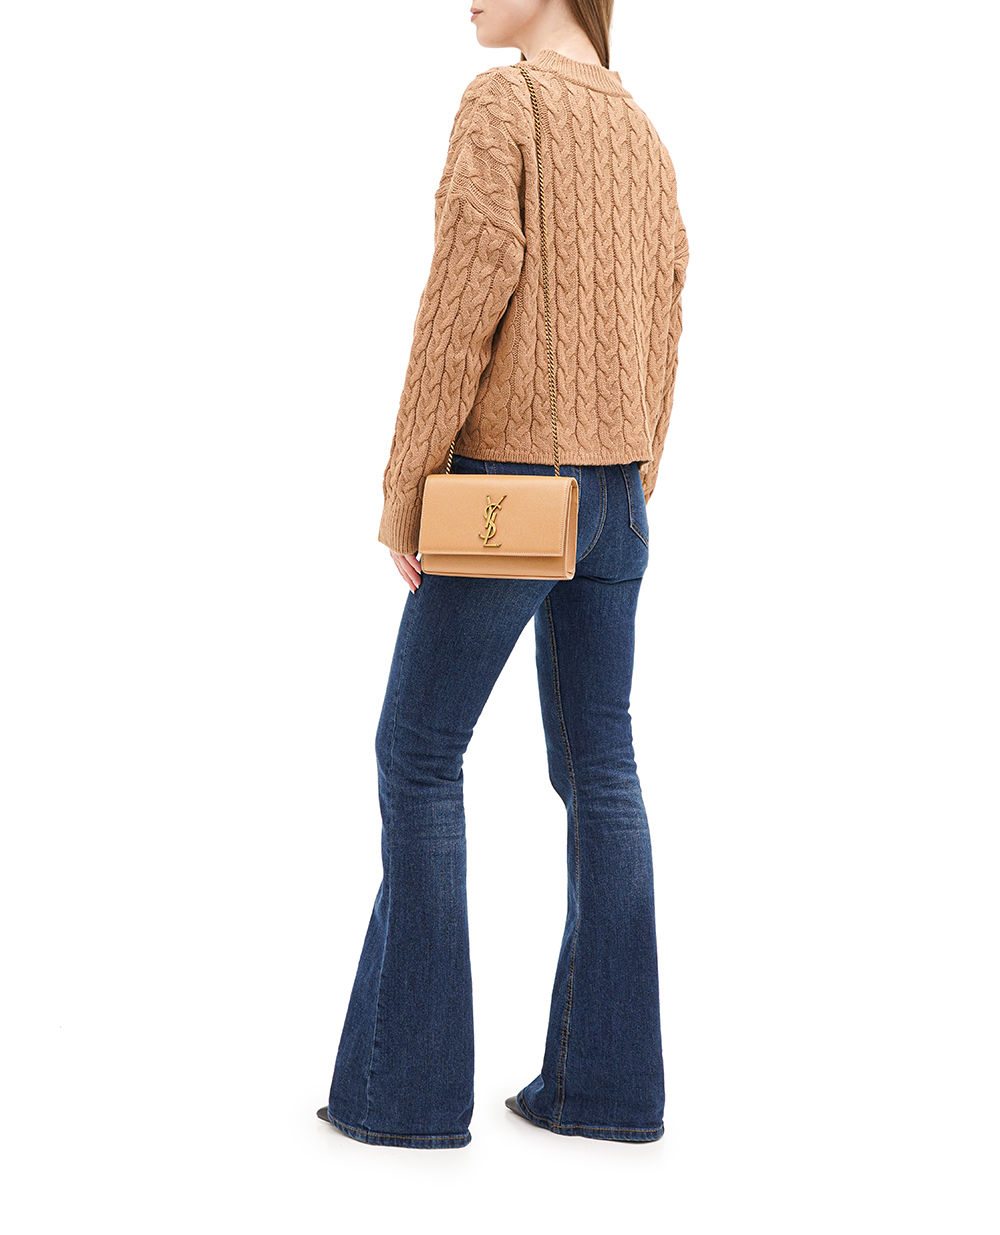 Кожаная сумка Kate Small Saint Laurent 469390-BOW0W, коричневый цвет • Купить в интернет-магазине Kameron